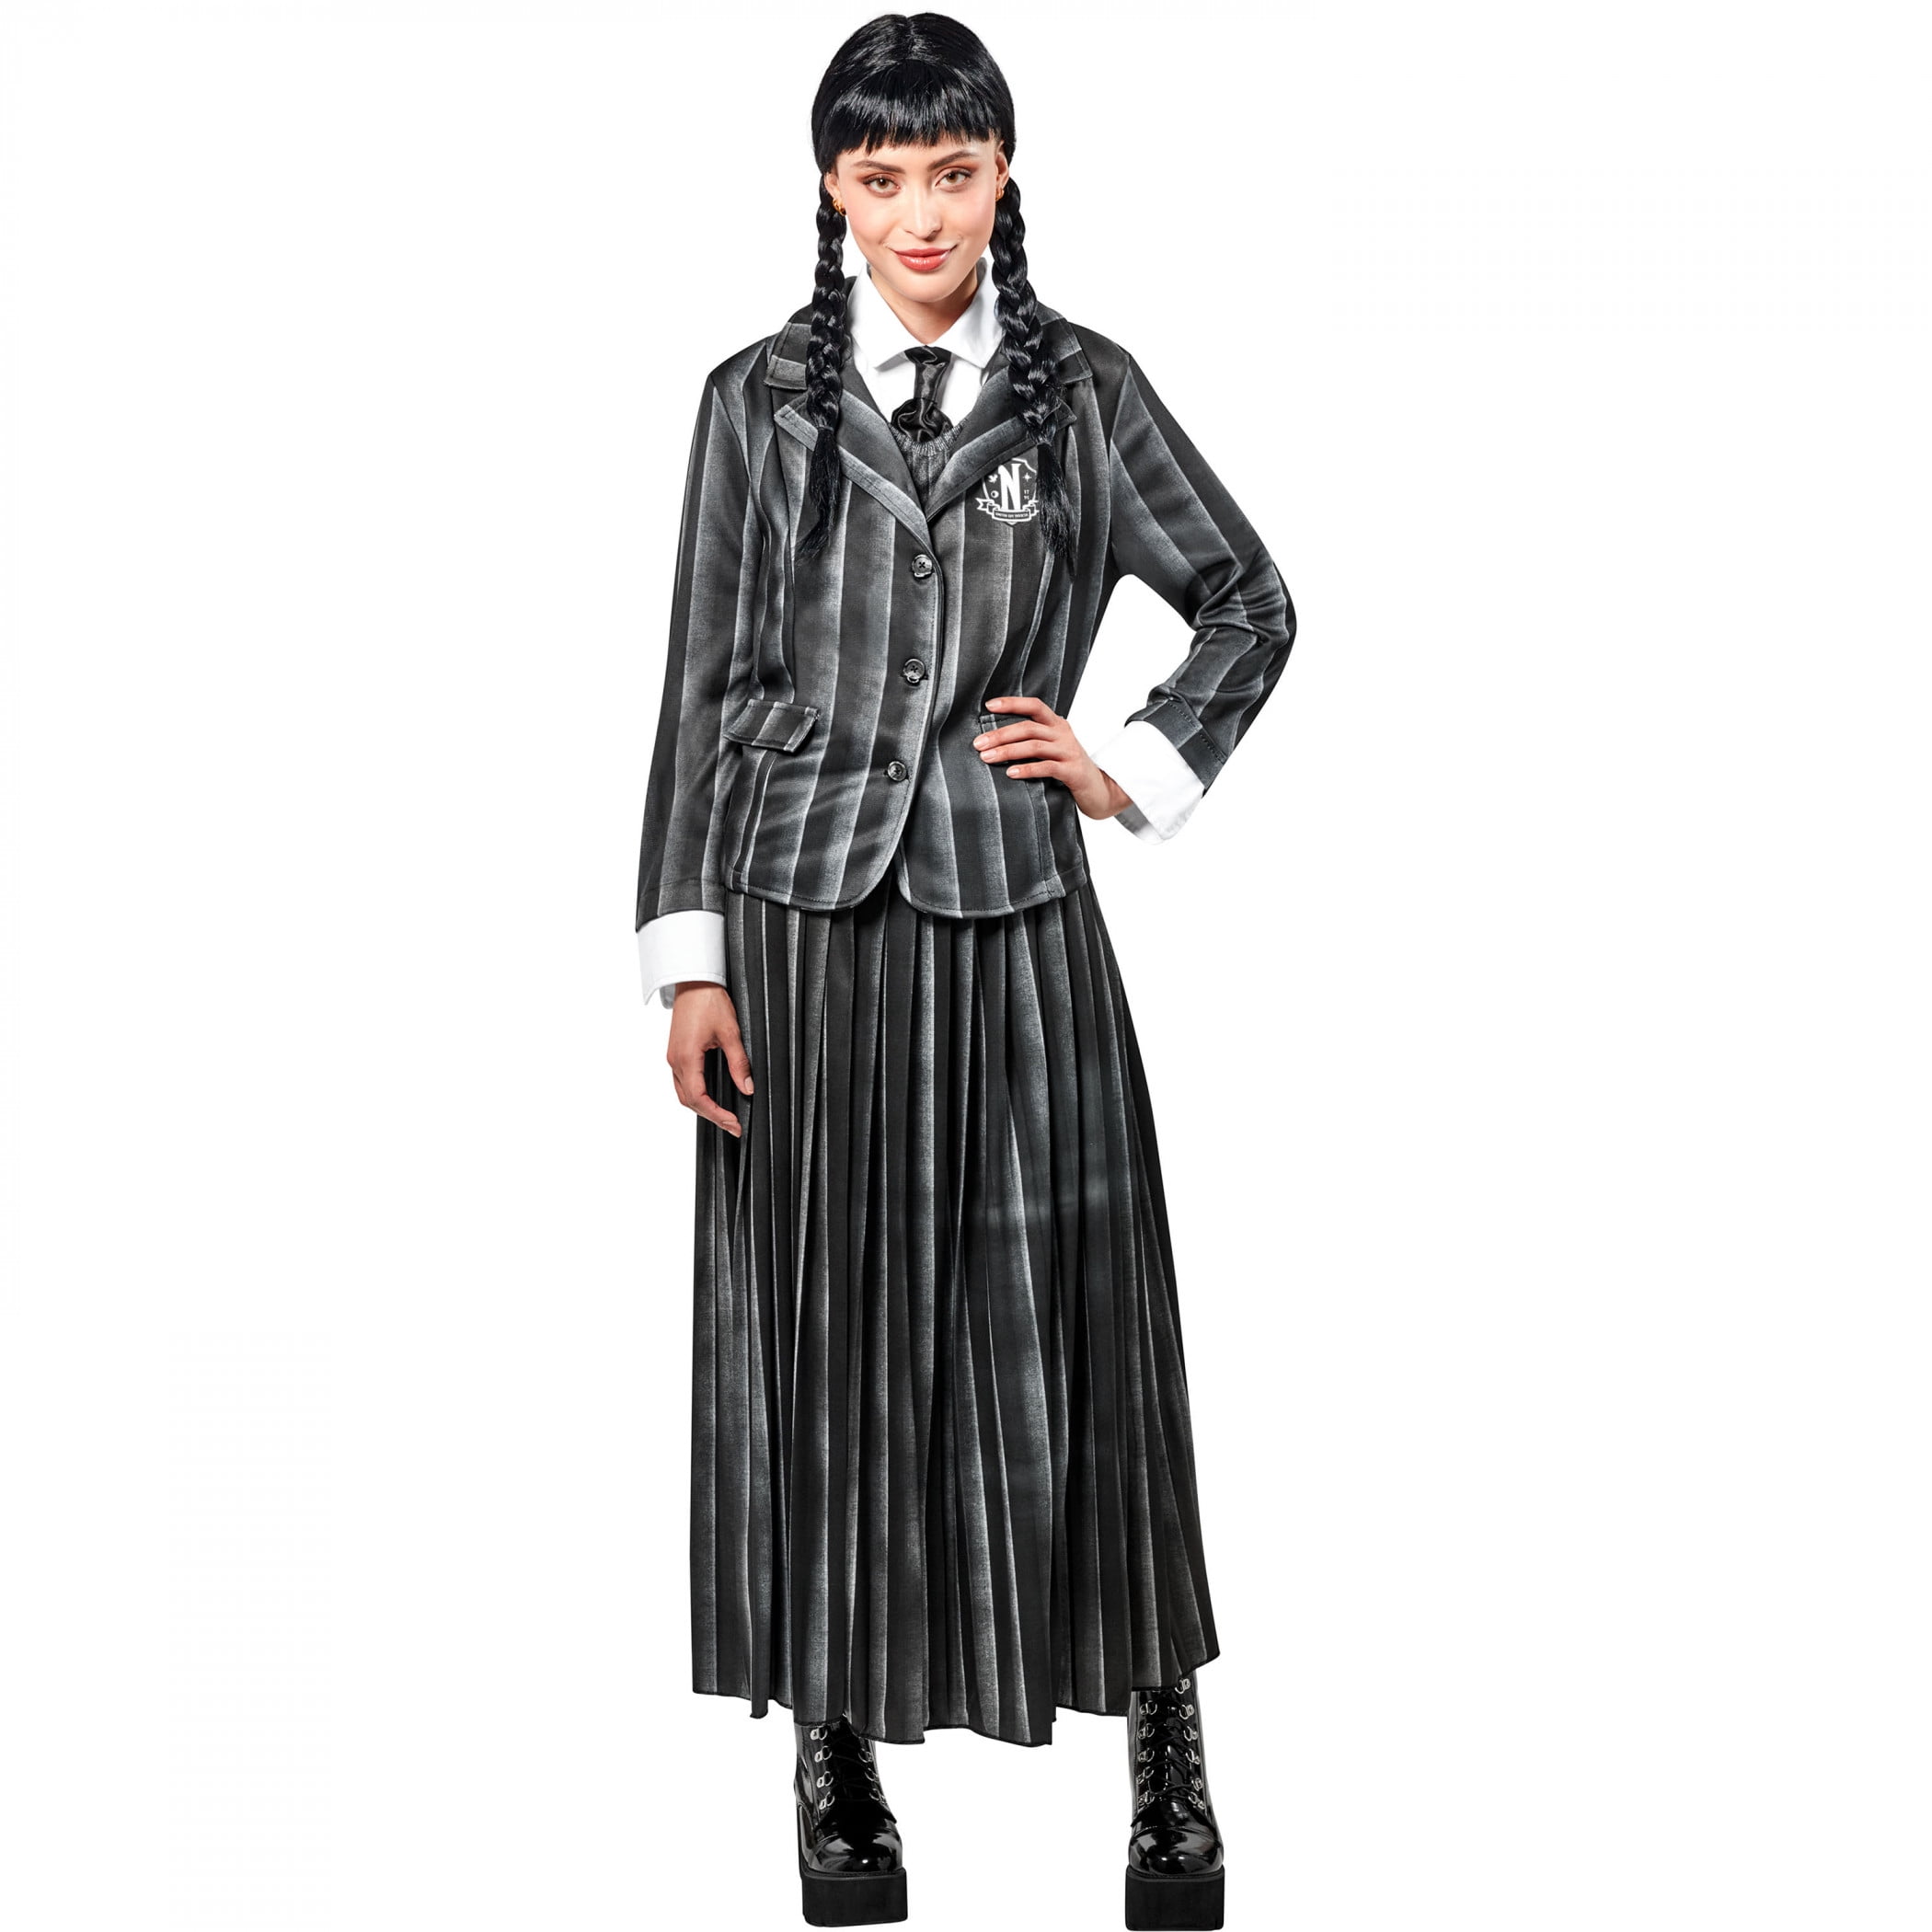 Adult Nevermore Uniform Costume - Wednesday